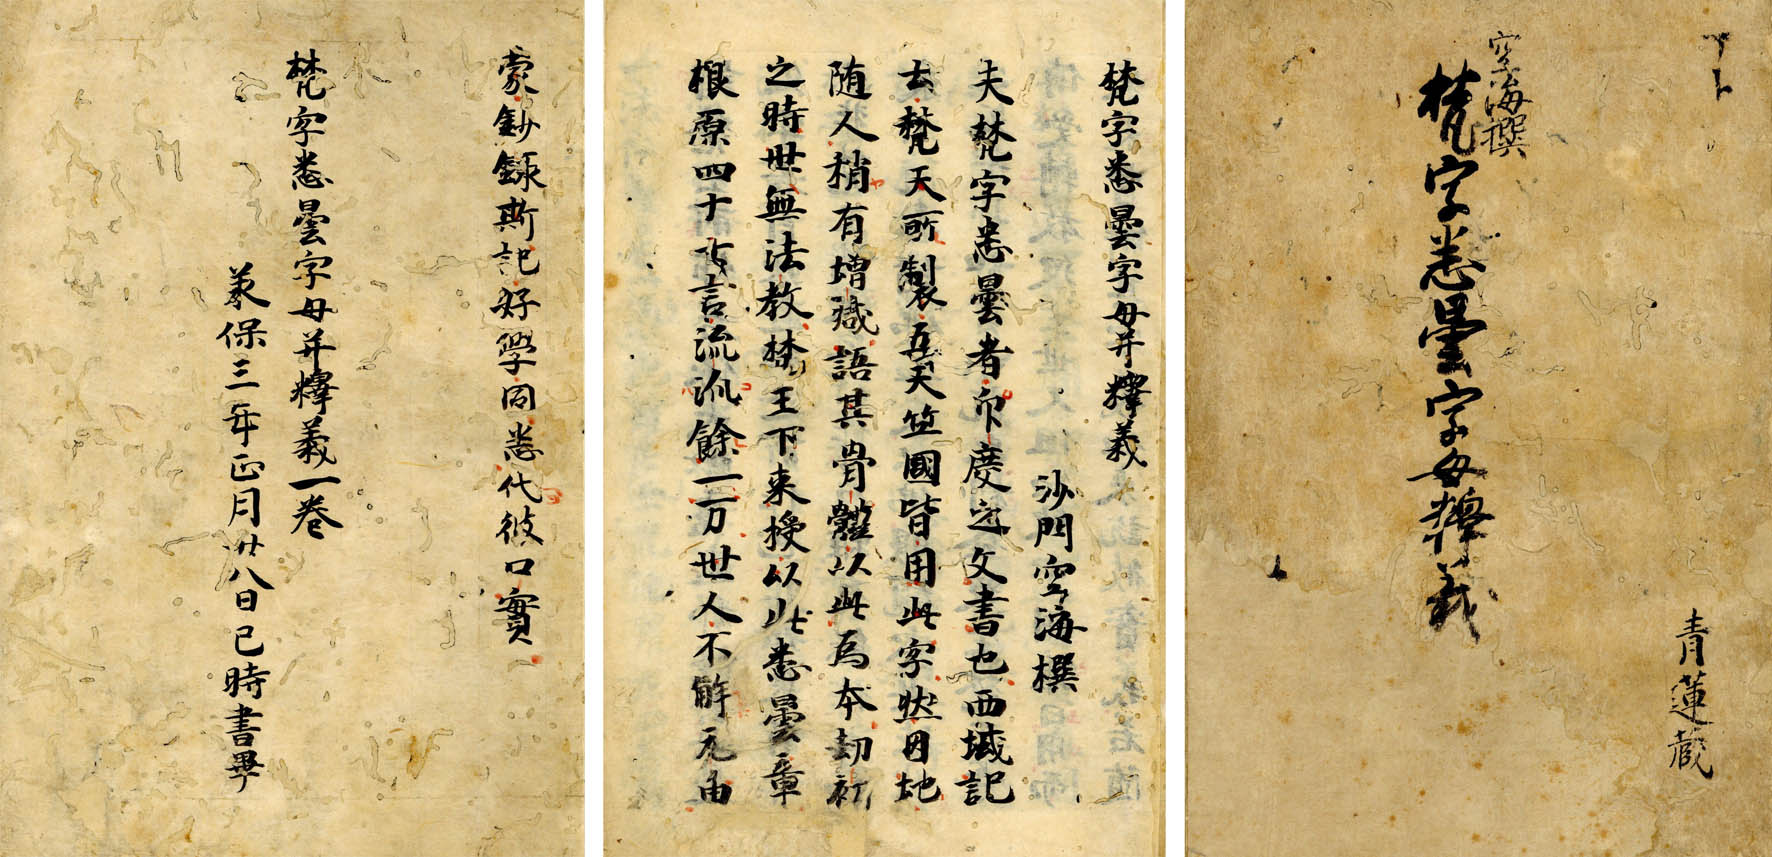 梵字悉曇字母并釈義 1冊 170003